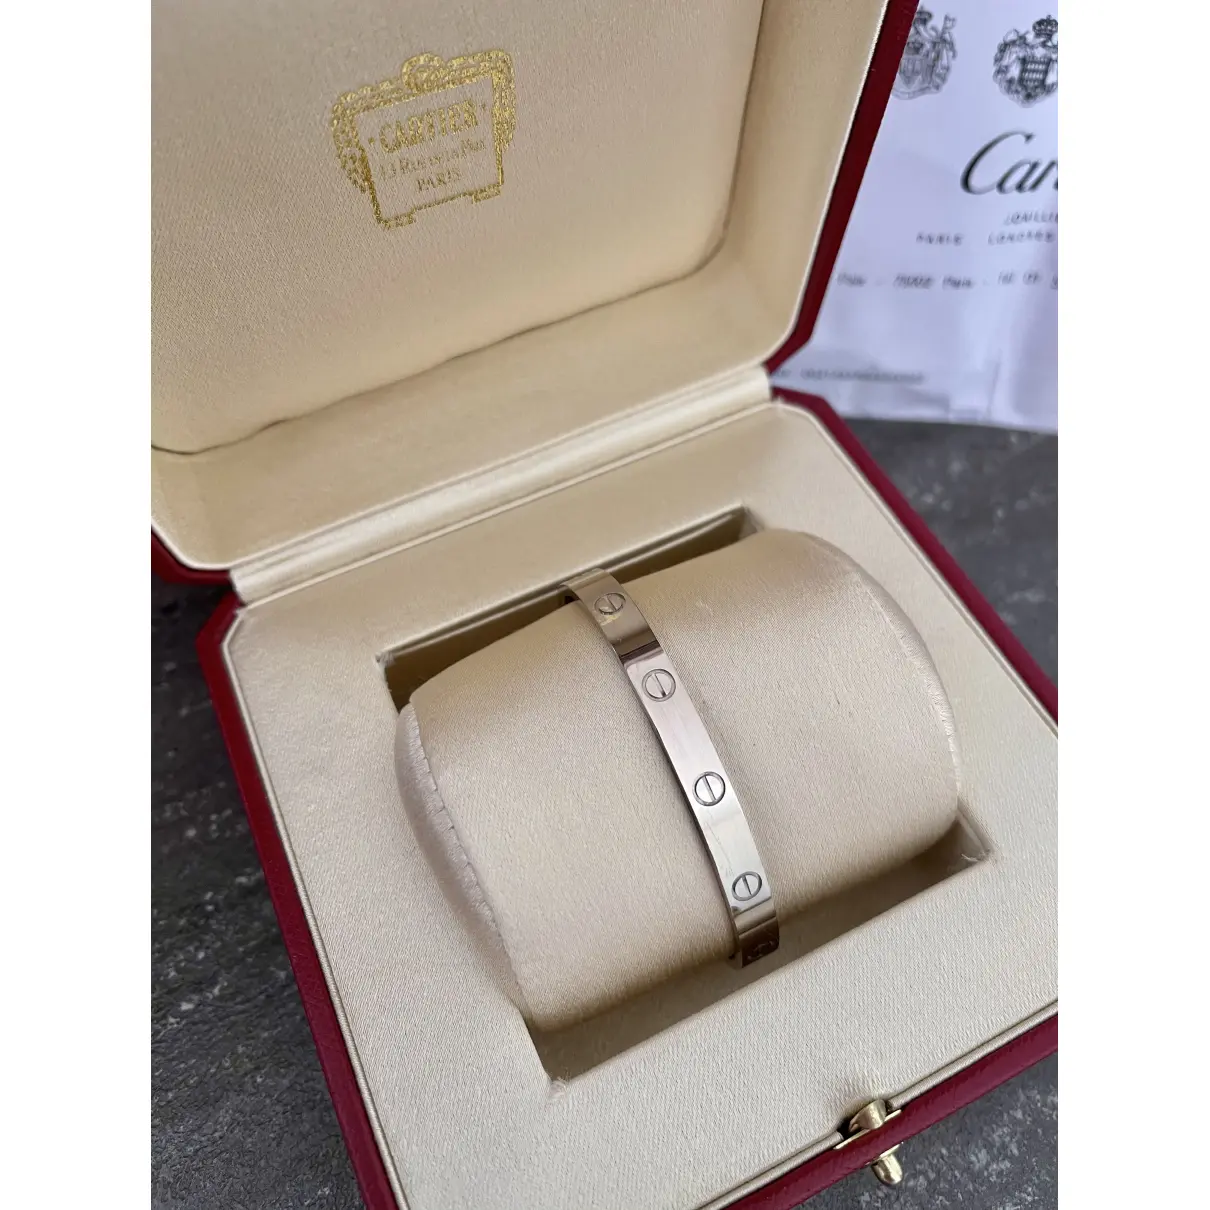 Buy Cartier Love white gold bracelet online